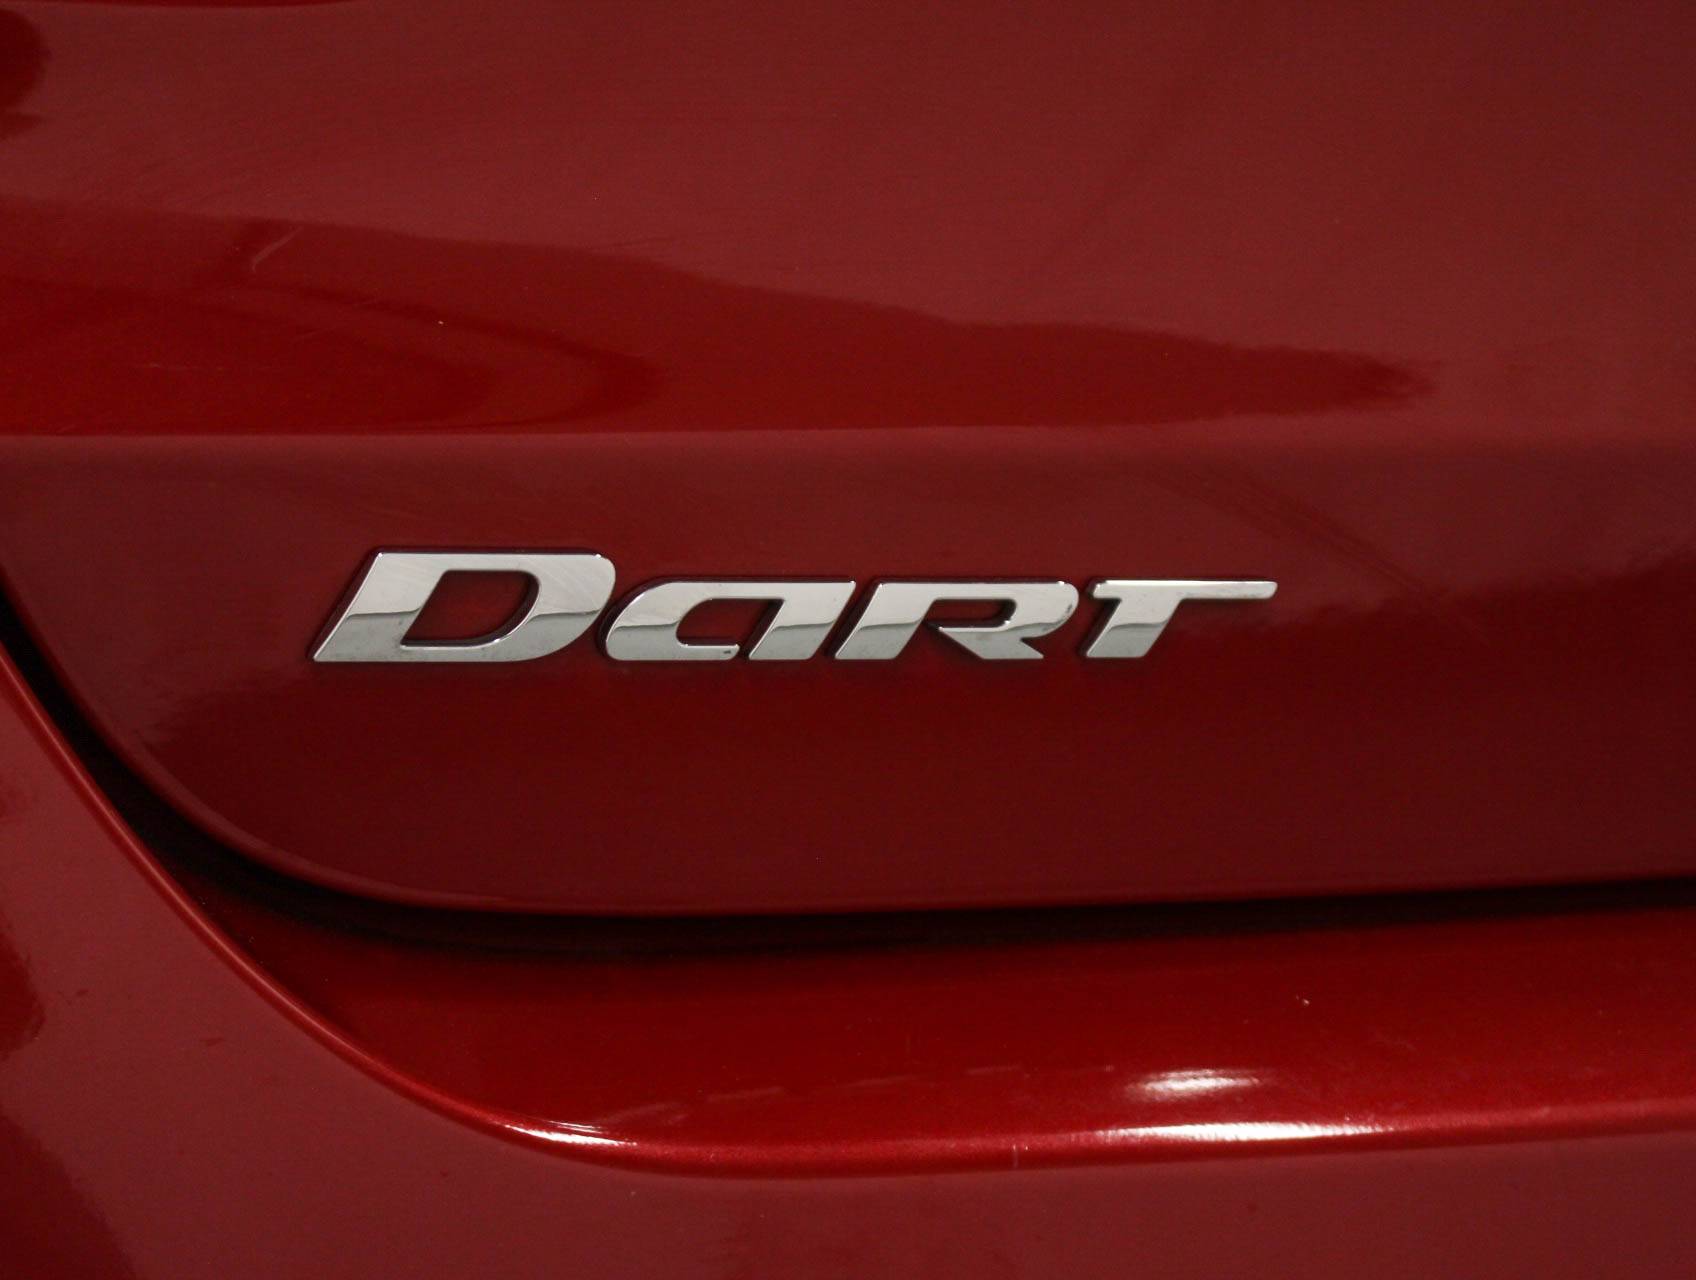 Florida Fine Cars - Used DODGE DART 2014 MARGATE Limited Gt